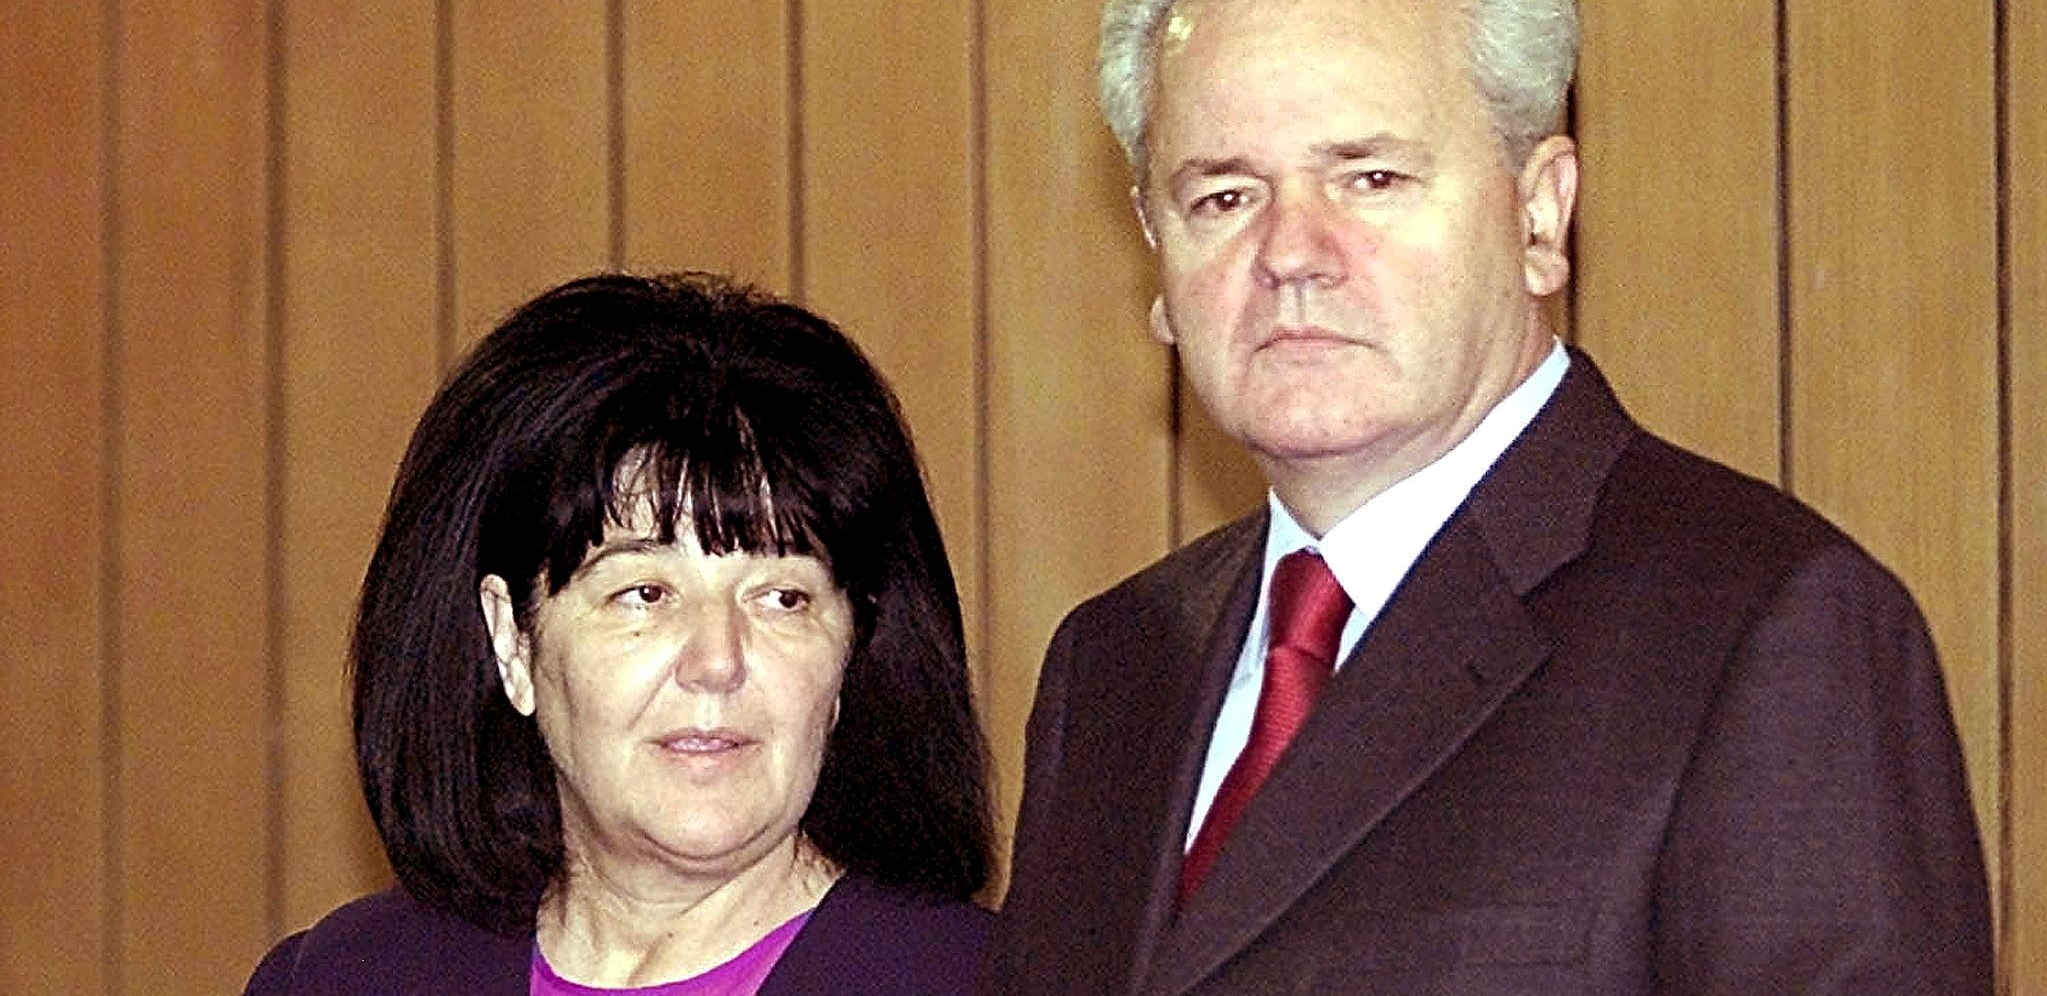 NA DANAŠNJI DAN Preminula je Mirjana Marković, udovica nekadašnjeg predsednika Srbije i SFRJ Slobodana Miloševića